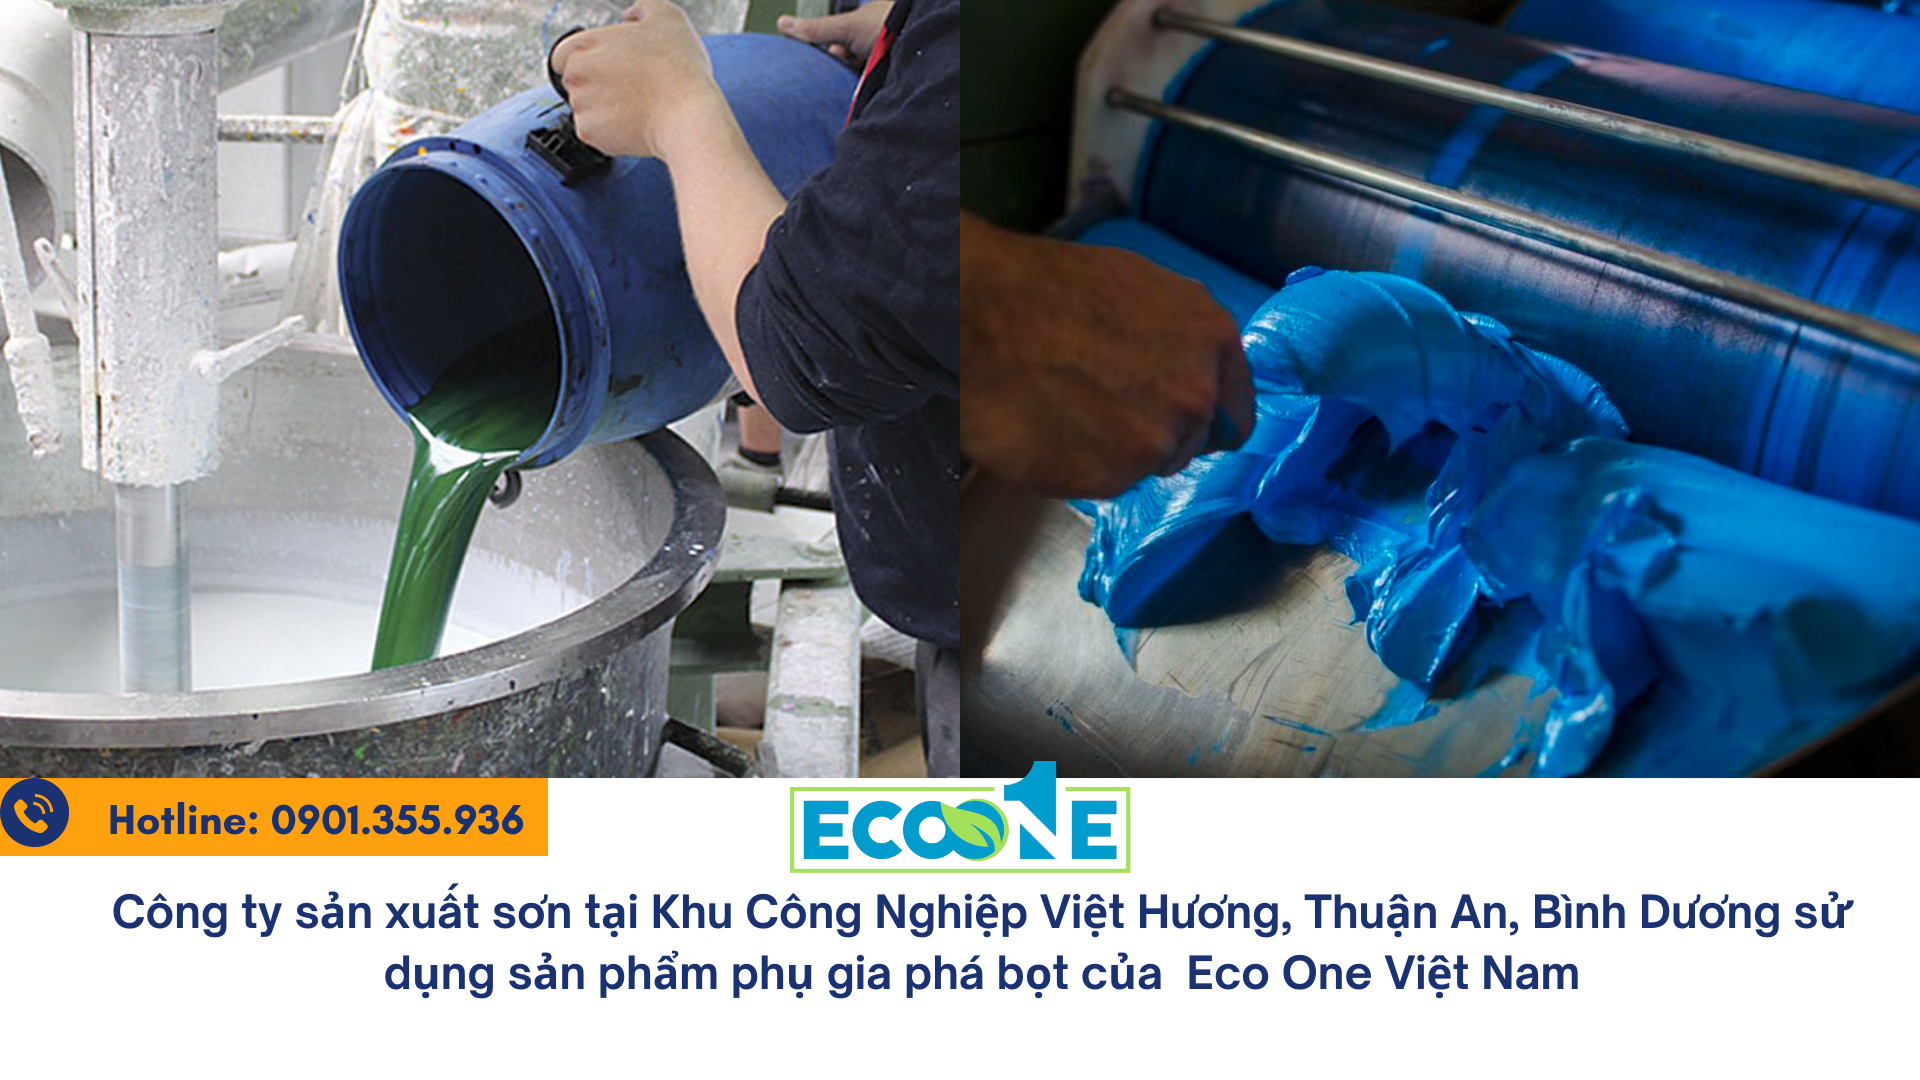 Công ty sản xuất sơn tại Khu Công Nghiệp Việt Hương, Thuận An, Bình Dương sử dụng sản phẩm phụ gia phá bọt của Eco One Việt Nam